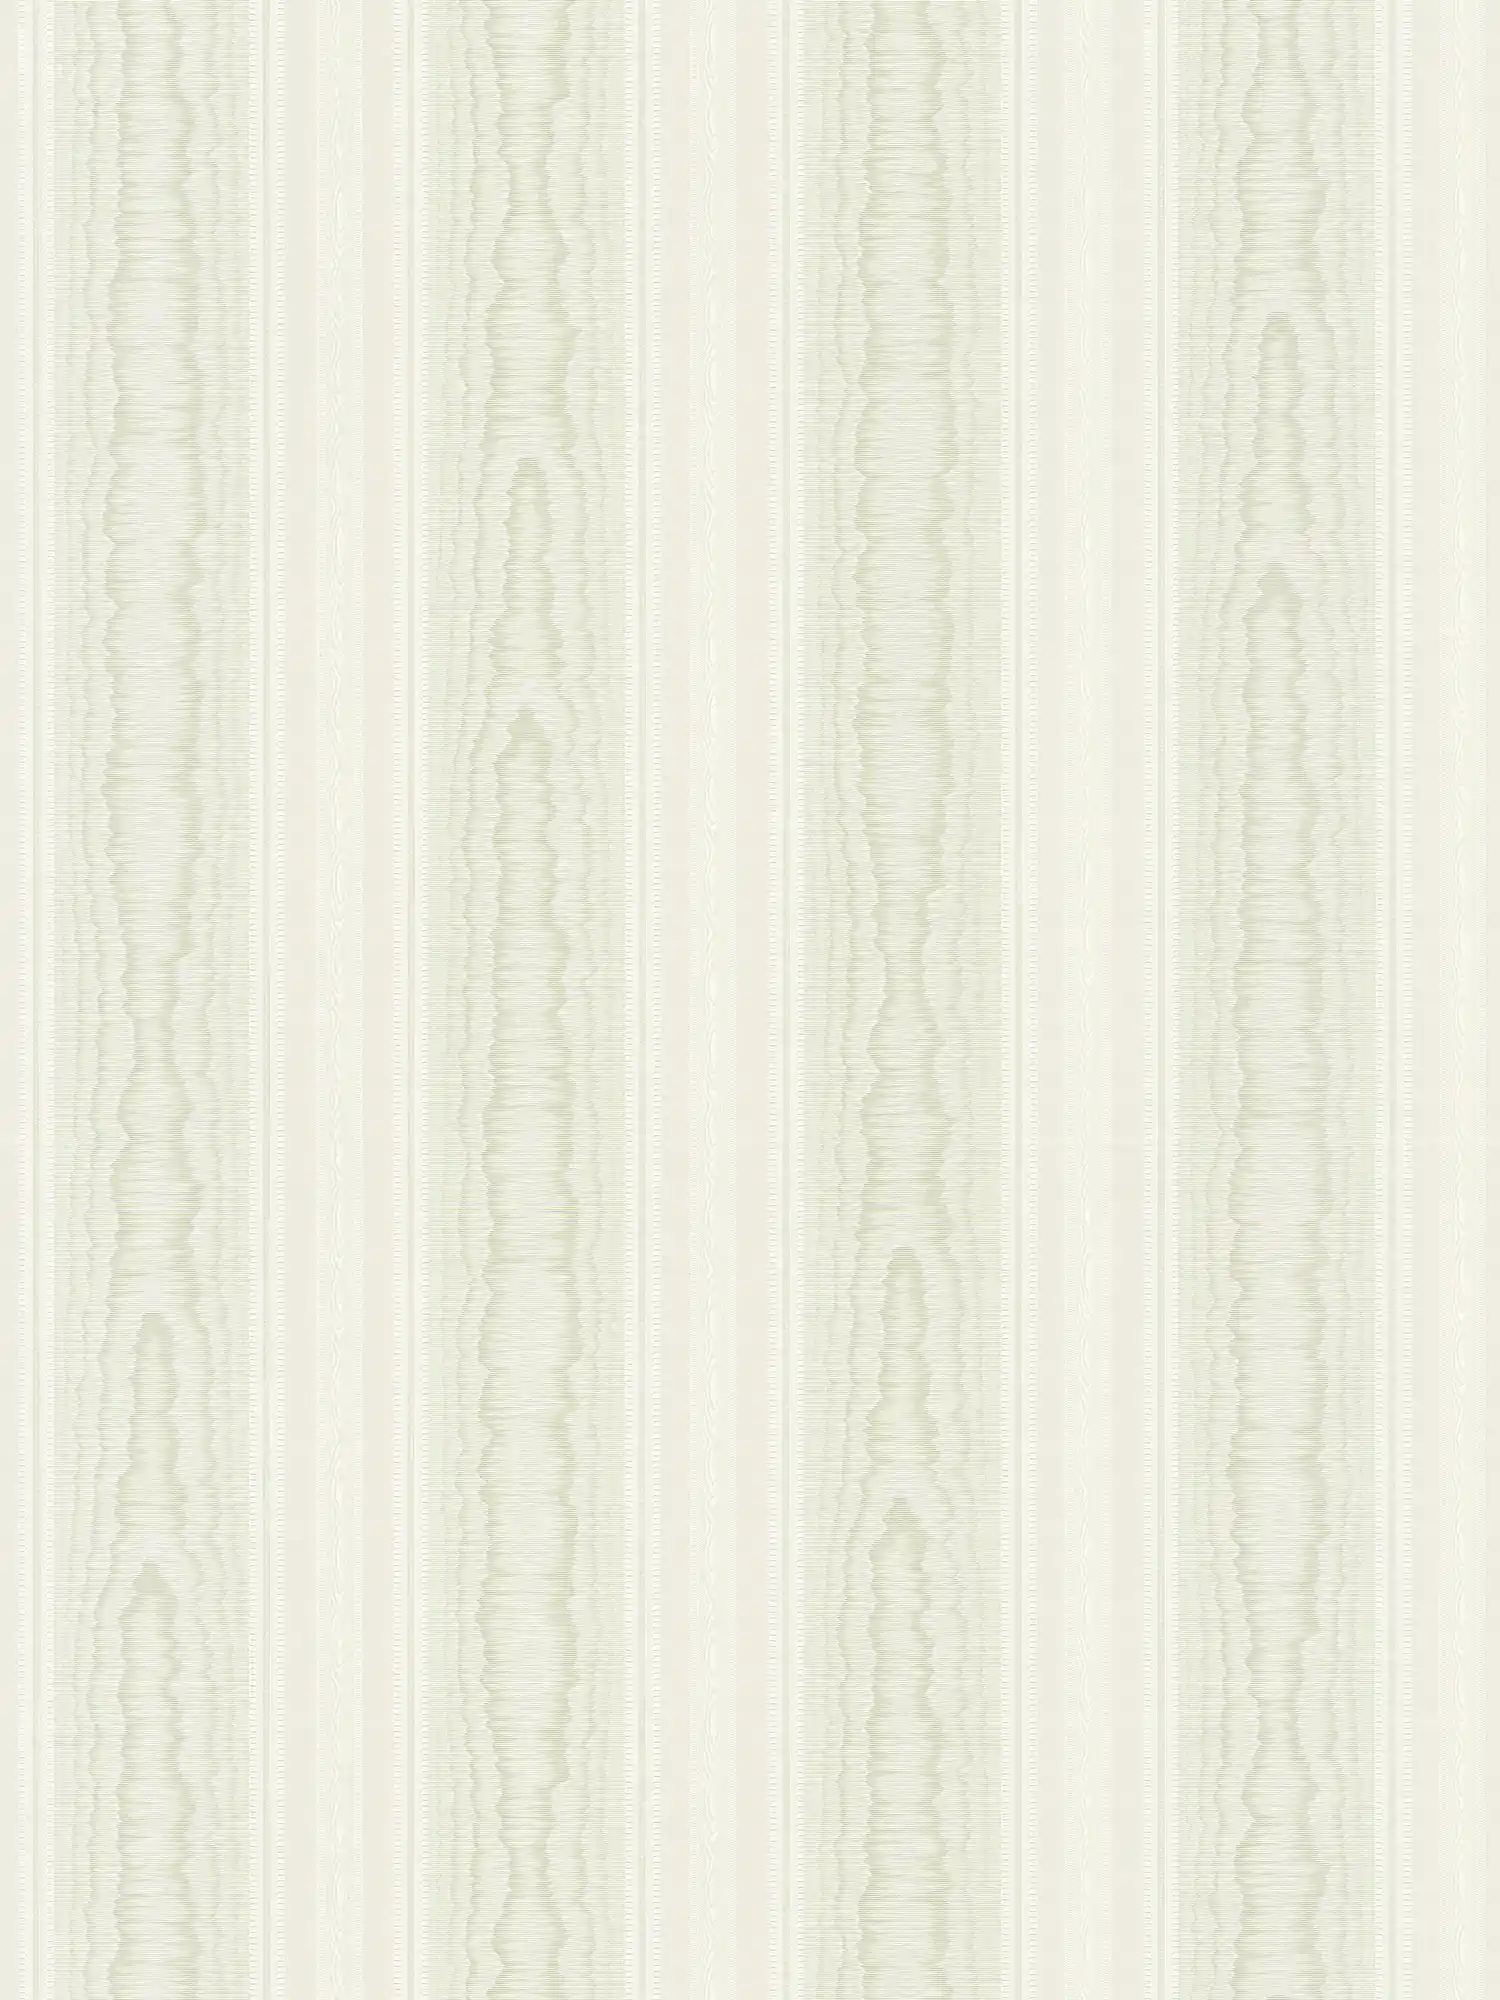         Luxus Streifen Tapete mit Moiré Design – Grün, Weiß
    